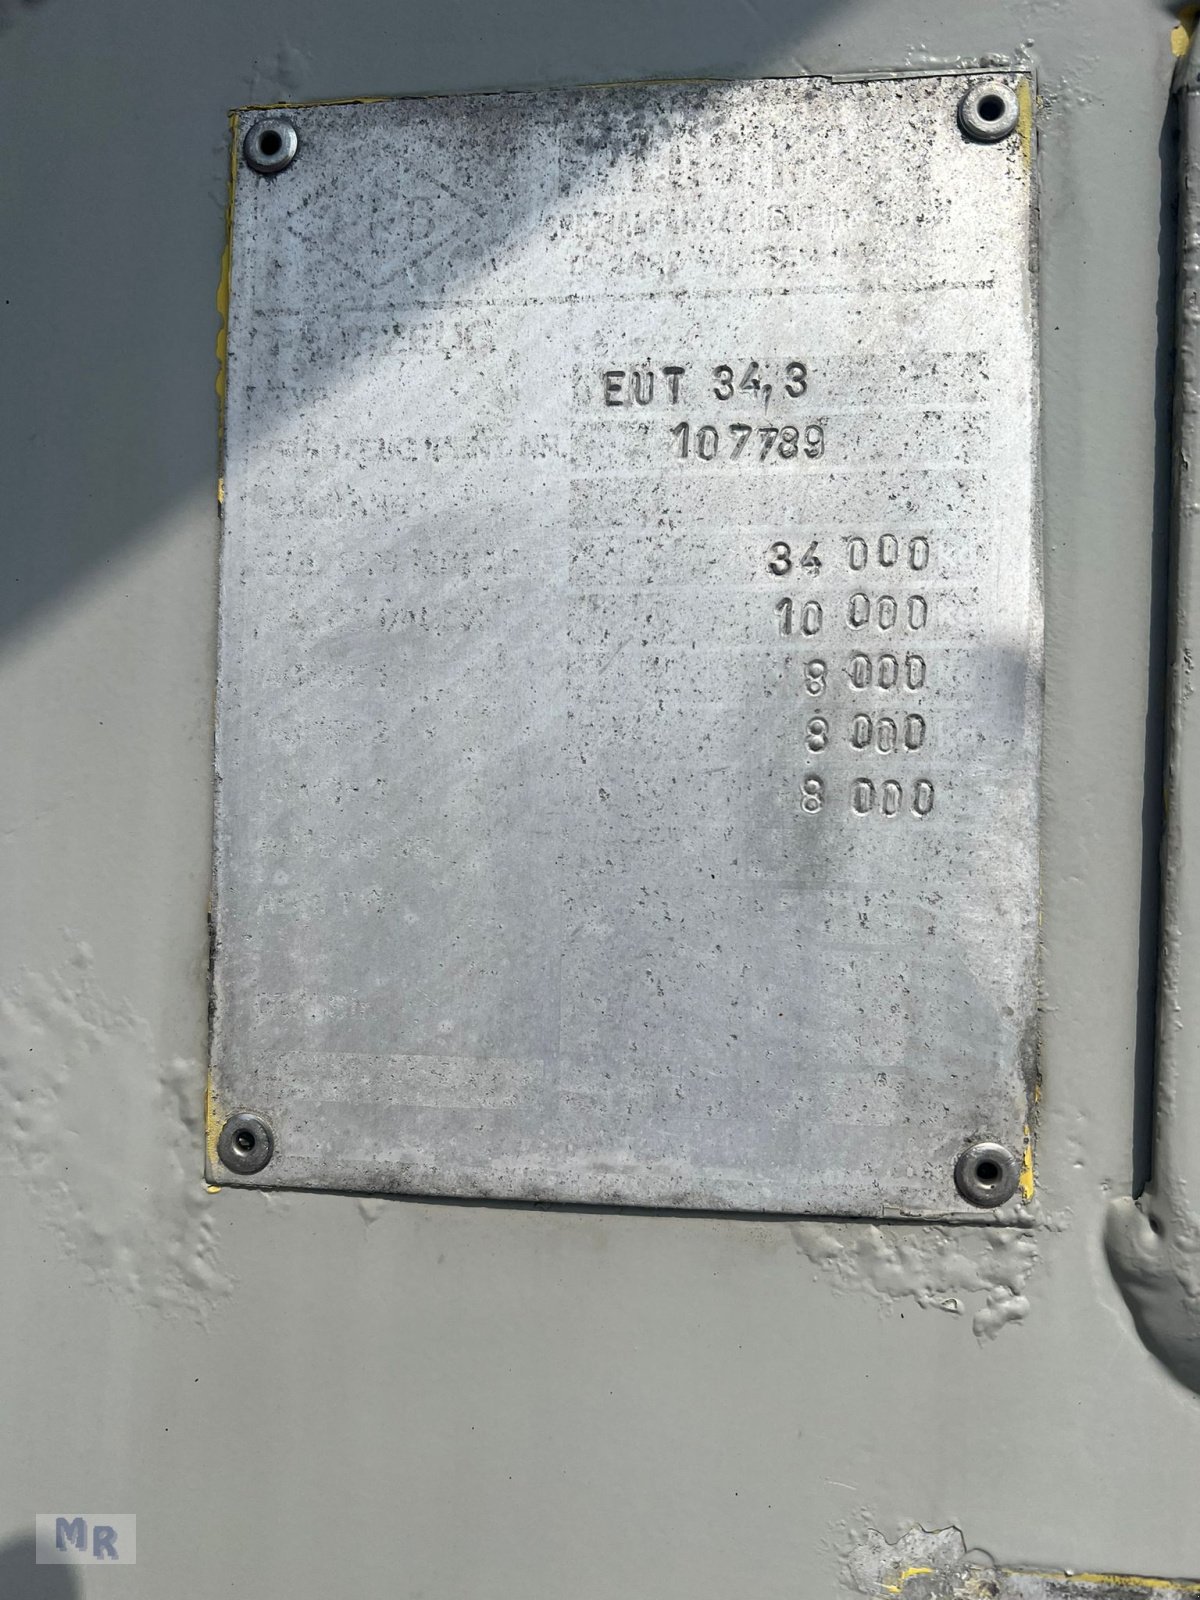 Silo des Typs Feldbinder EUT 34,3 Interne Nr. 7789, Gebrauchtmaschine in Greven (Bild 13)